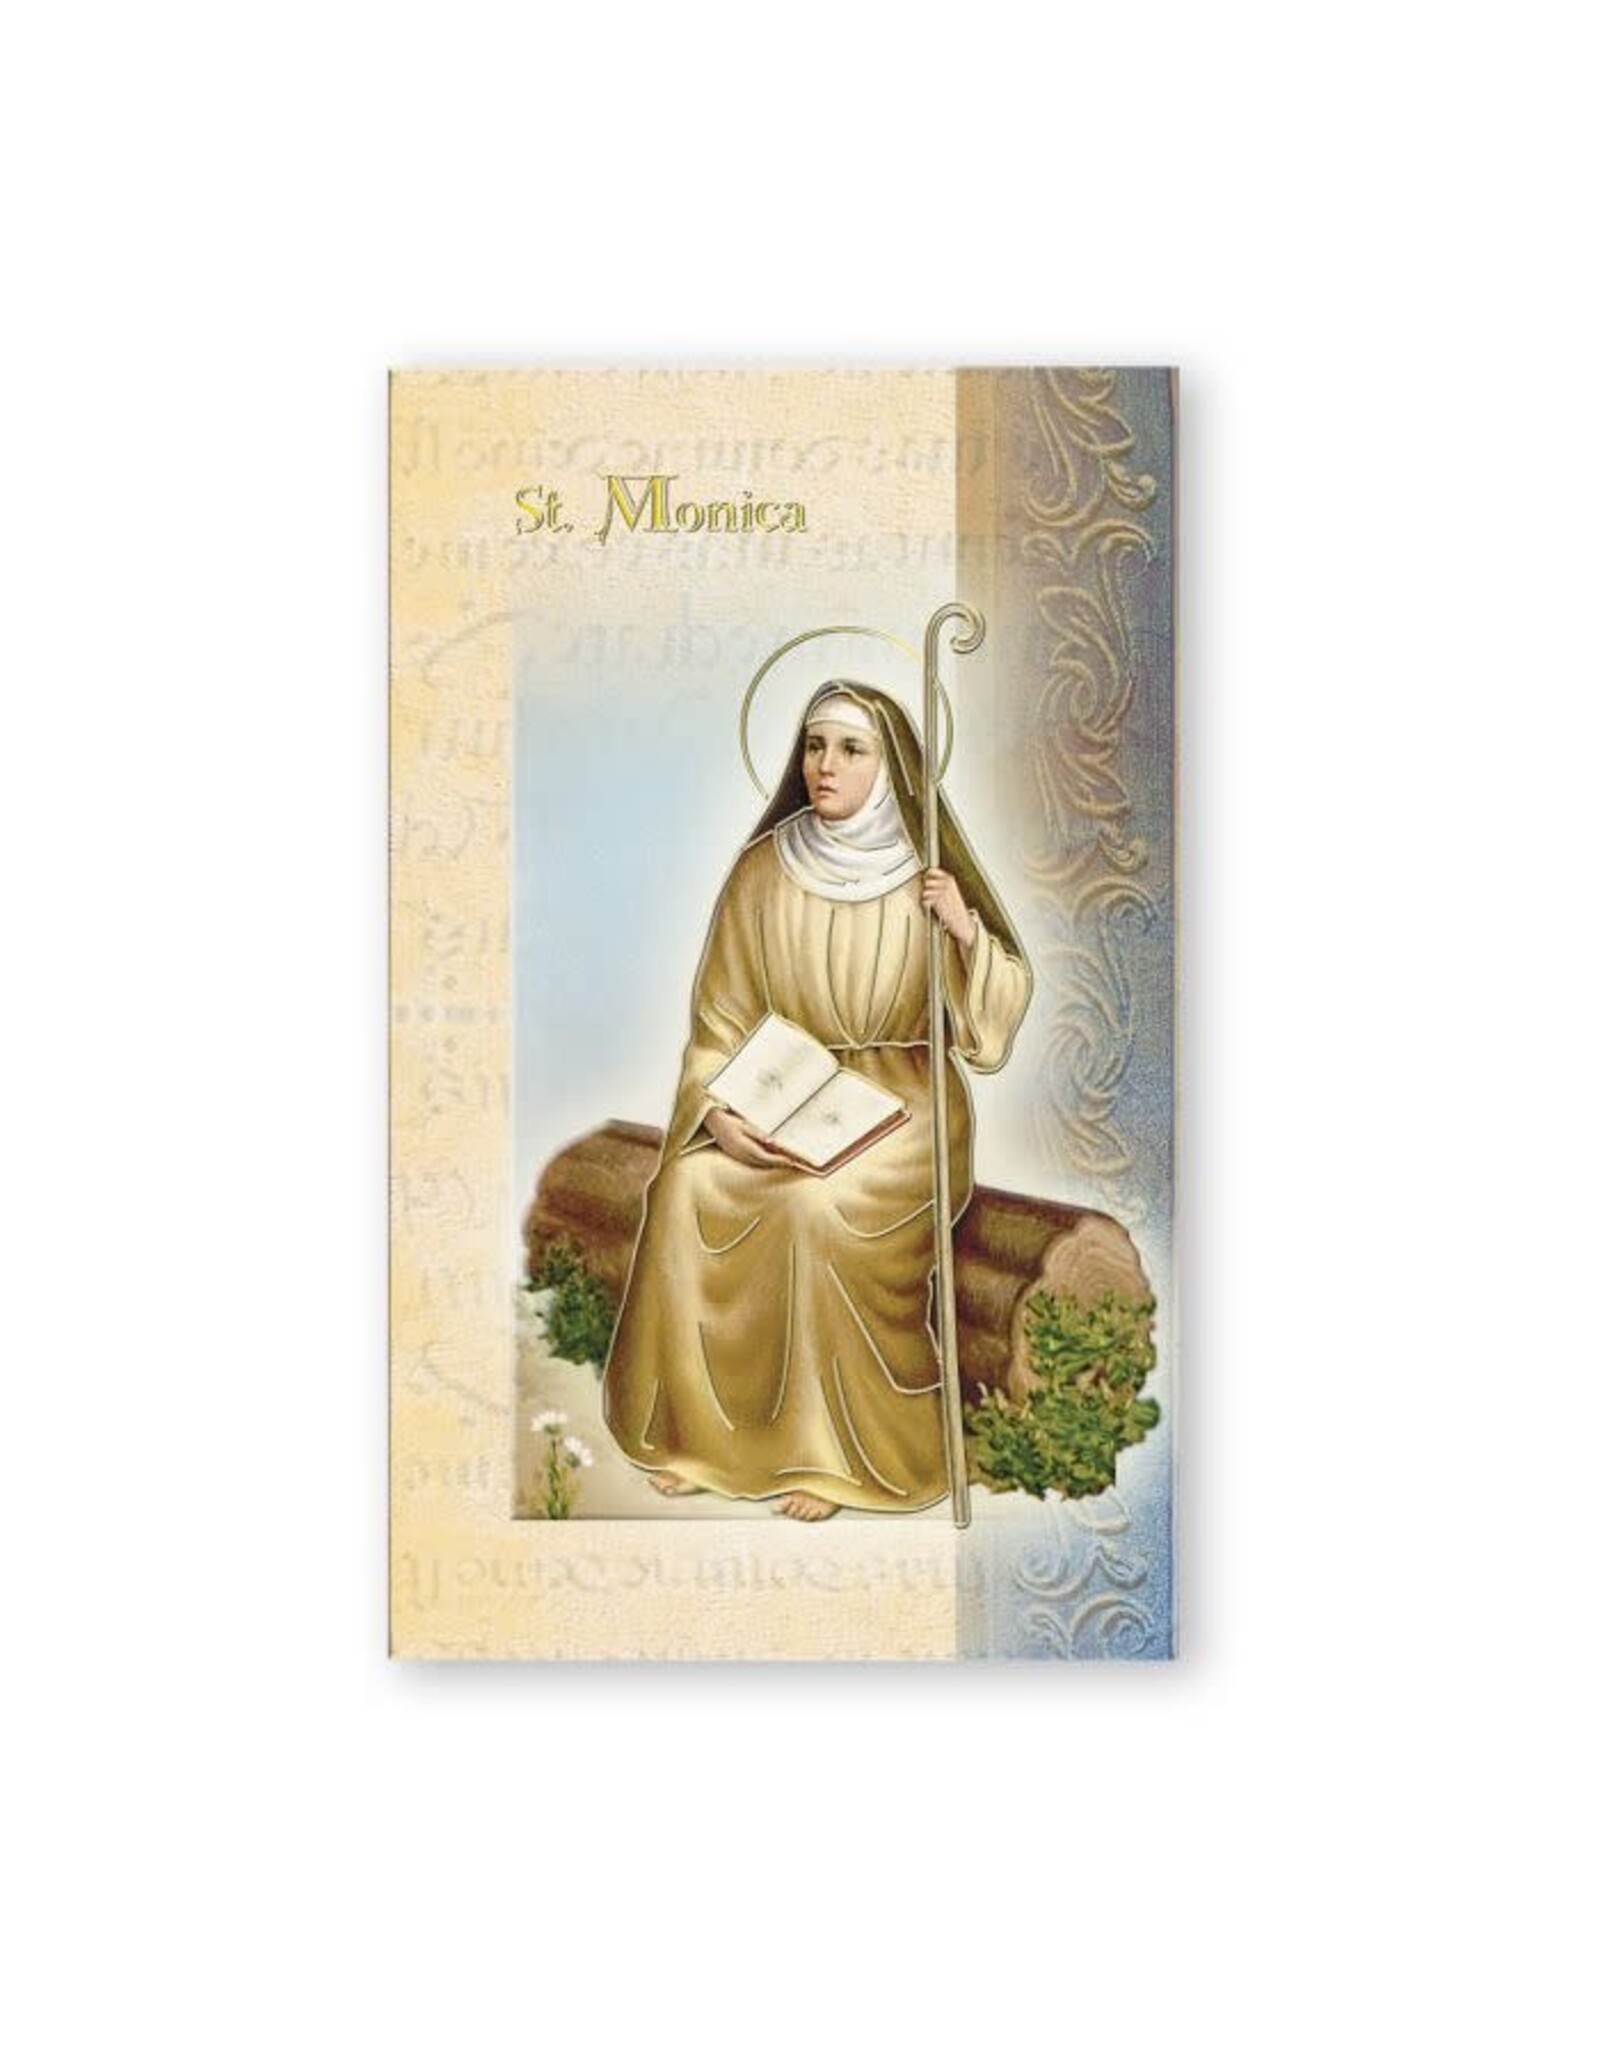 Hirten Saint Biography Folder - St. Monica